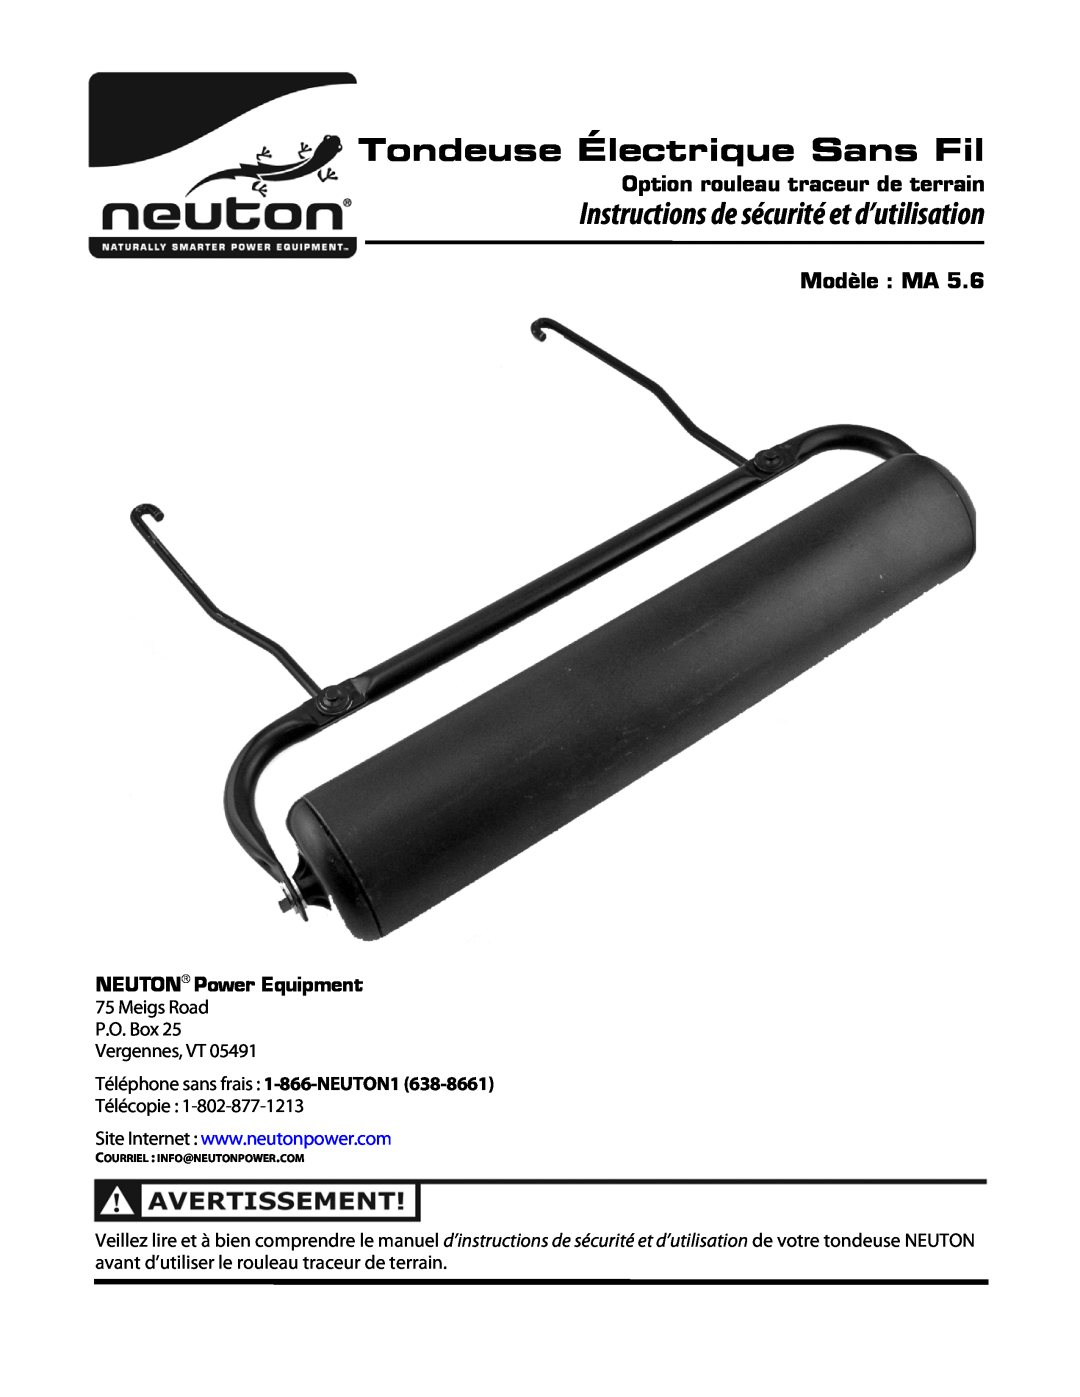 Neuton MA 5.6 Tondeuse Électrique Sans Fil, Instructions de sécurité et d’utilisation, Option rouleau traceur de terrain 